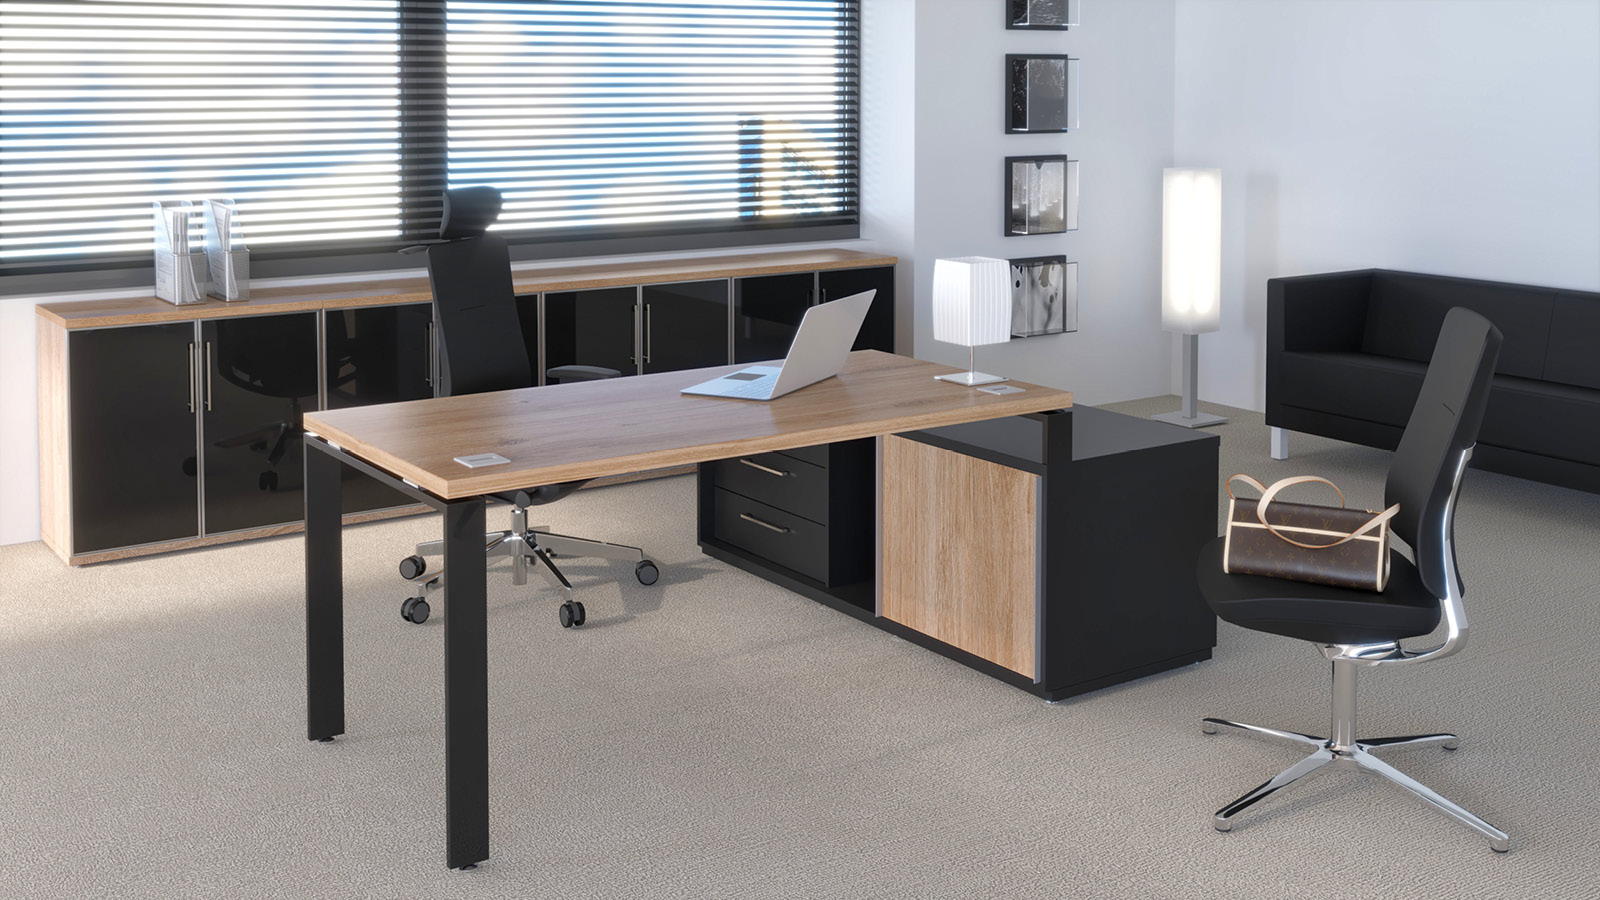 Biuro wyposażone w zestaw mebli, na który składa się: biurko na komodzie, 2 krzesła i ciąg szaf. Kolory: wiąz nobile/czarny.